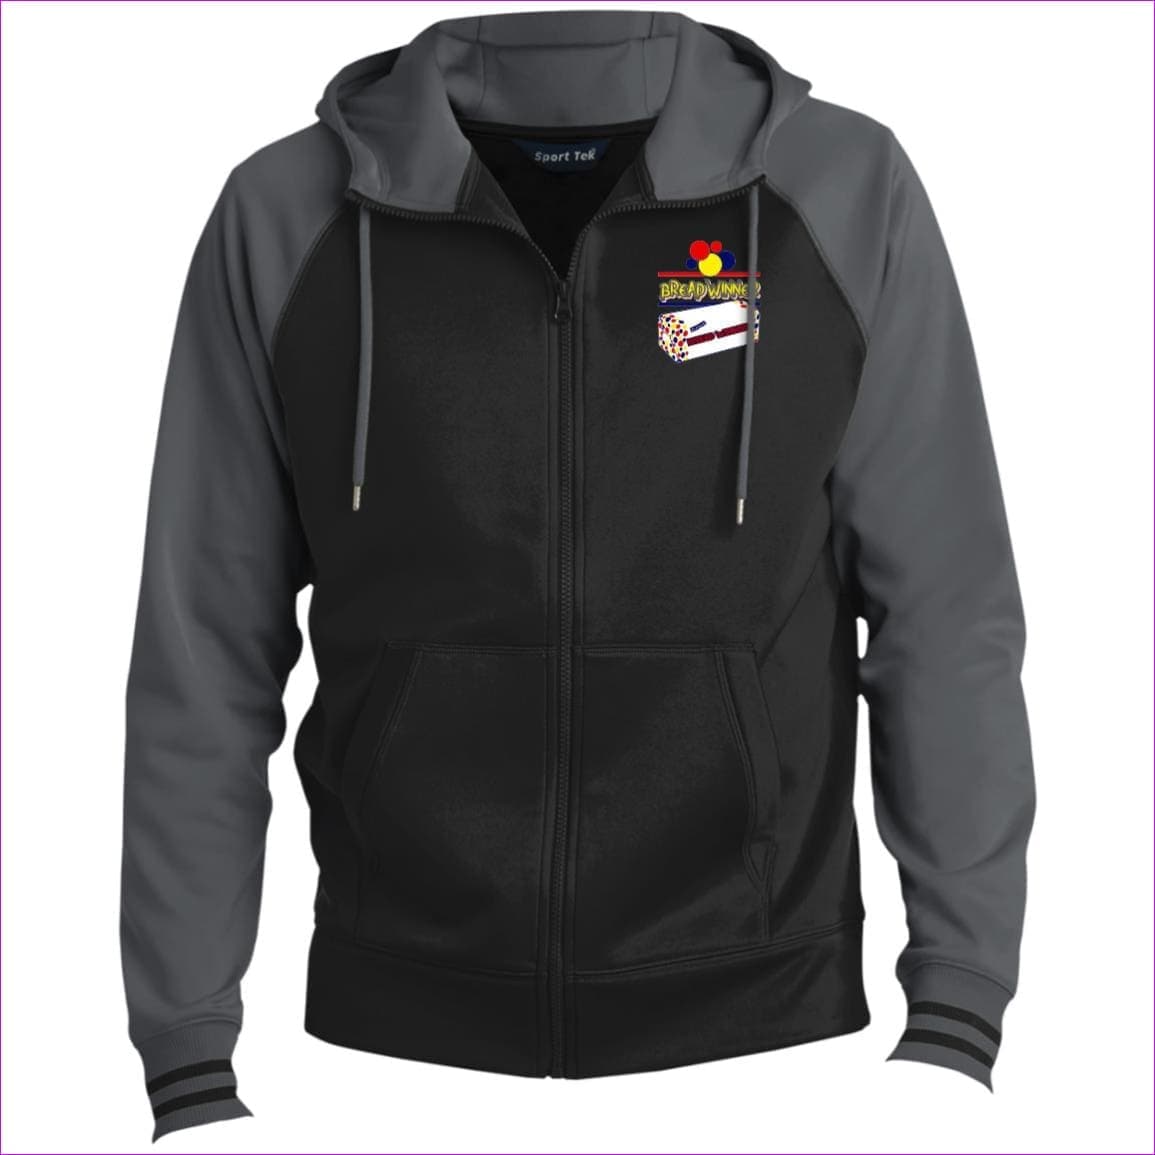 Black/Dark Smoke Bread Winner Men's Sport-Wick® Full-Zip Hooded Jacket - Men's Jackets at TFC&H Co.